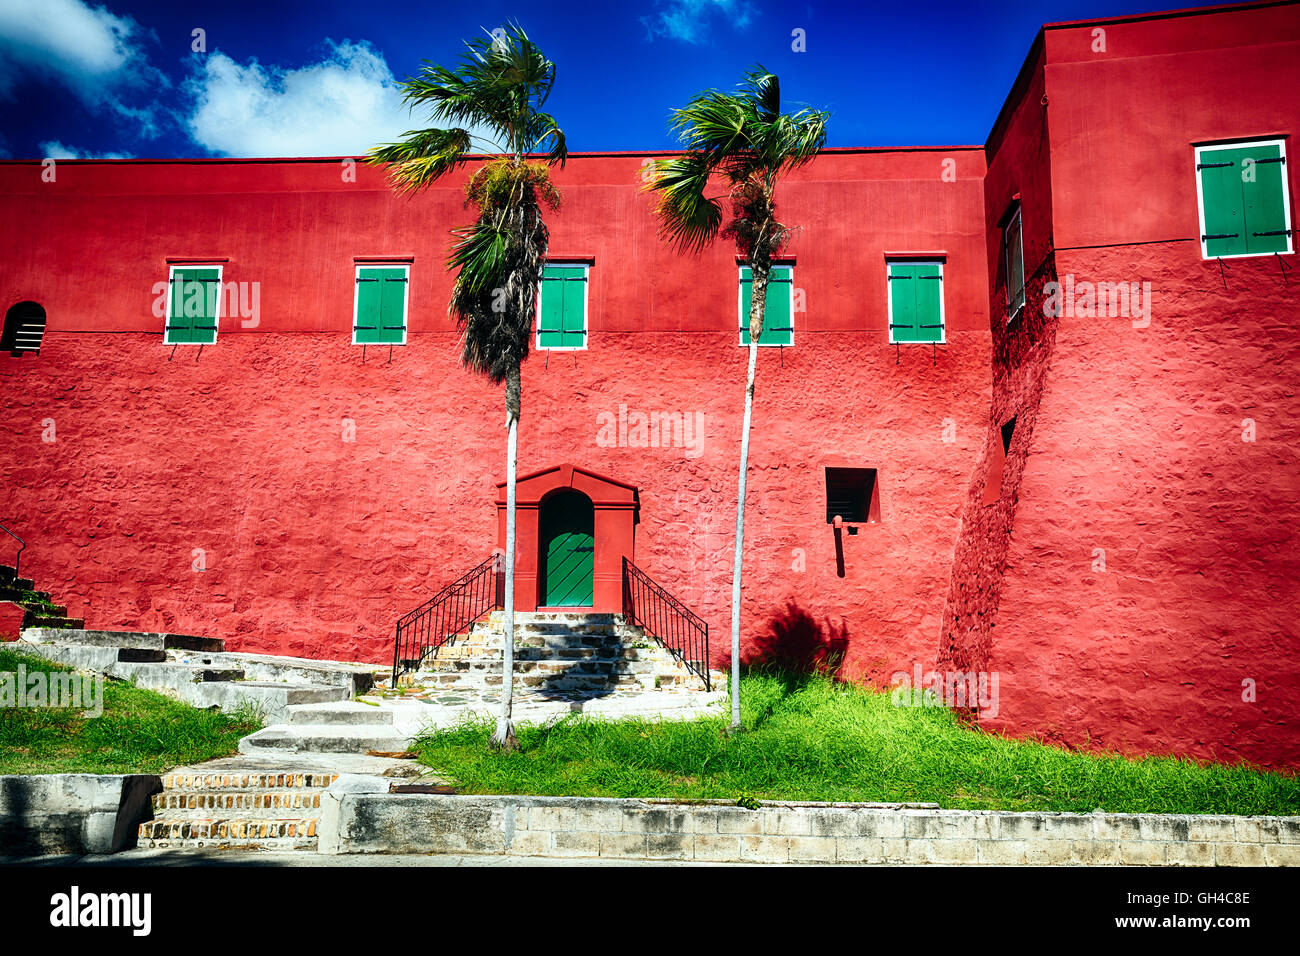 Low Angle View les murs rouges et aux volets verts de Fort Christian, Charlotte Amalie, St Thomas, Îles Vierges Américaines Banque D'Images